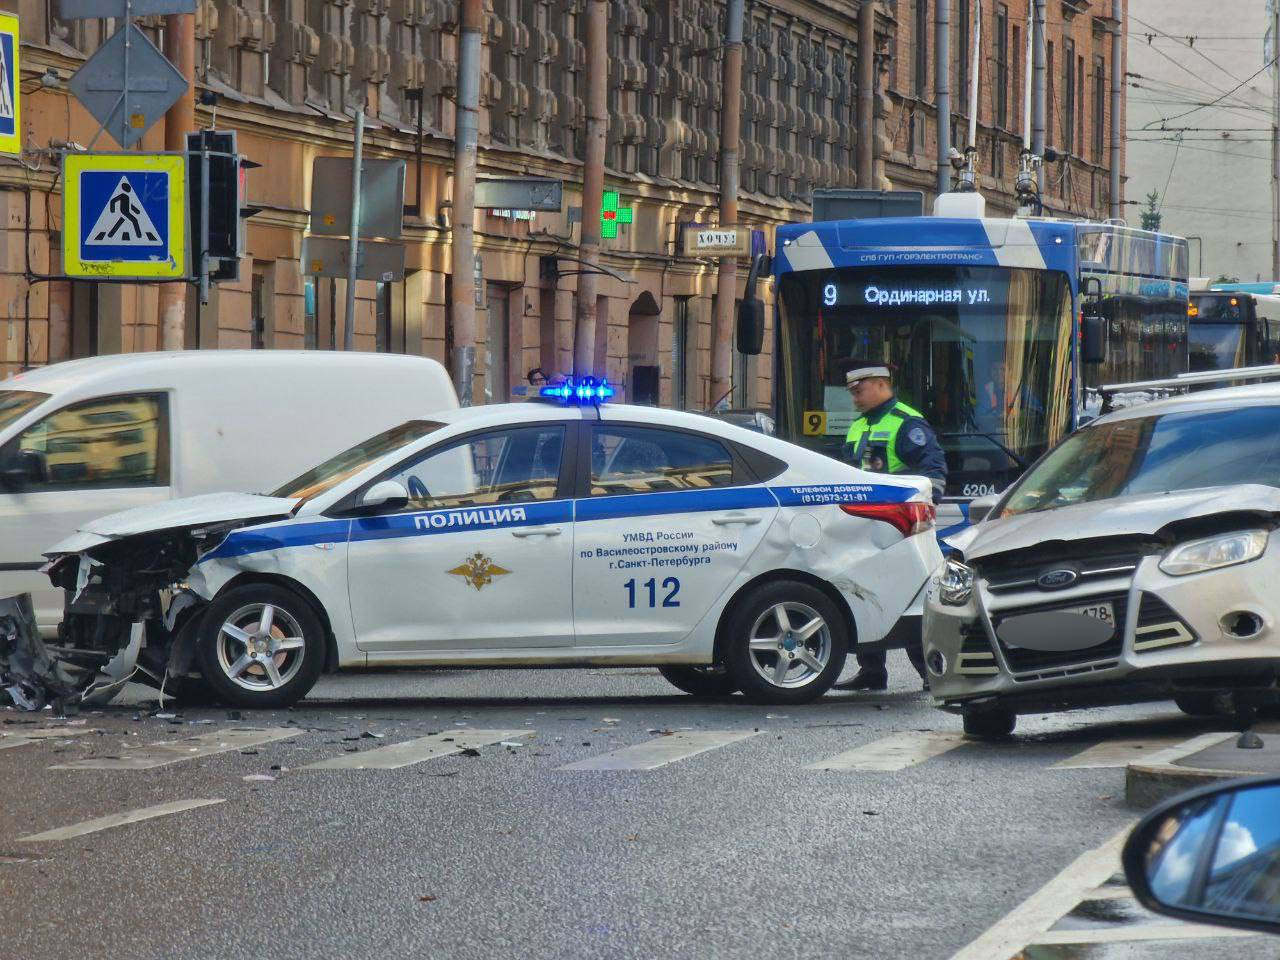 Полицейская машина. Машина "полиция". Полицейские машины Санкт-Петербурга. Разбитые полицейские машины.